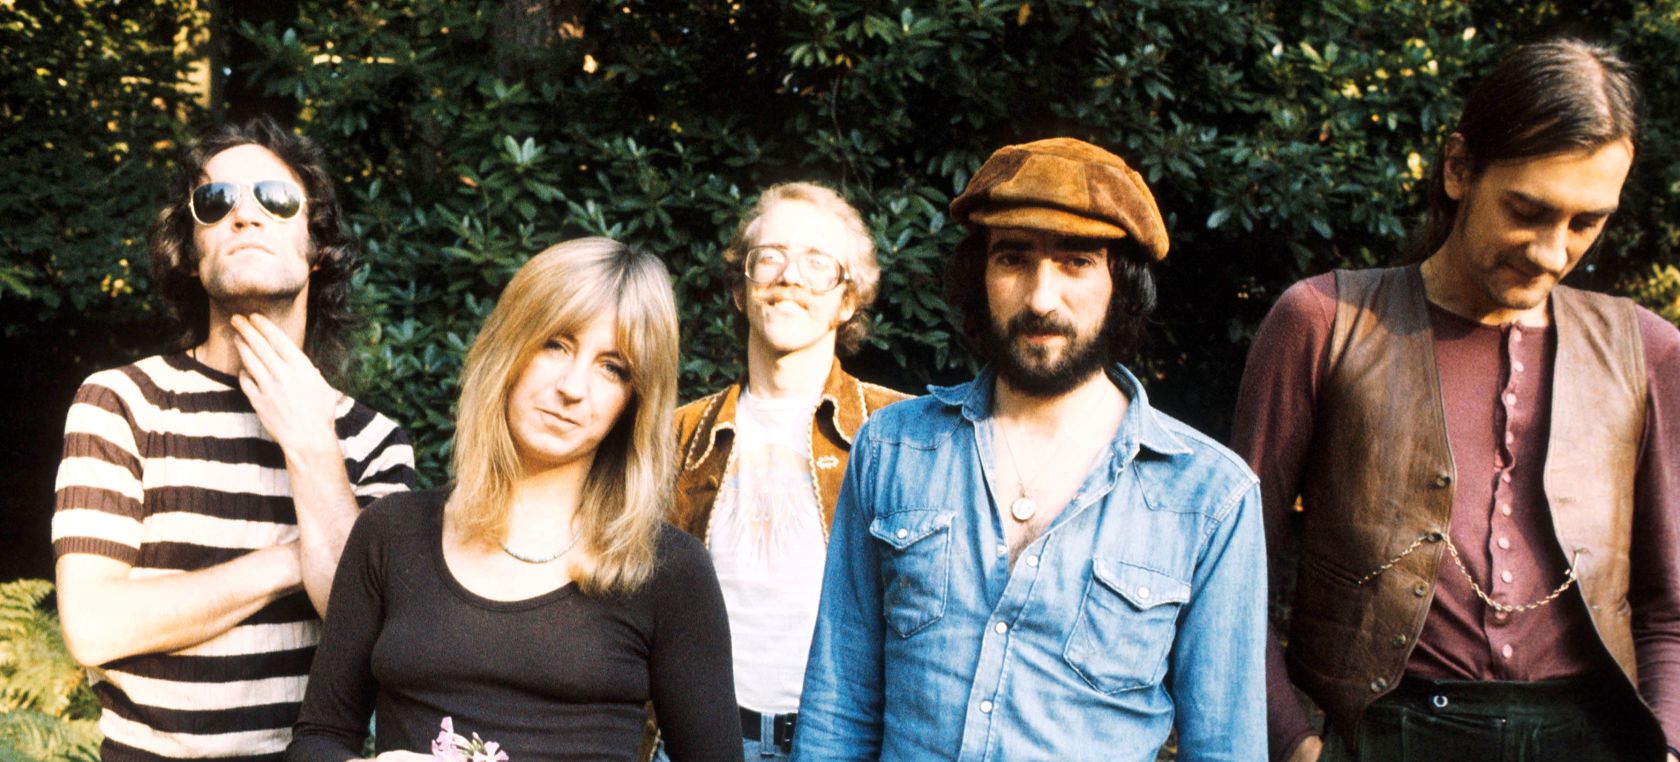 ‘Dreams’ de Fleetwood Mac vuelve a la lista de las más escuchadas gracias a TikTok